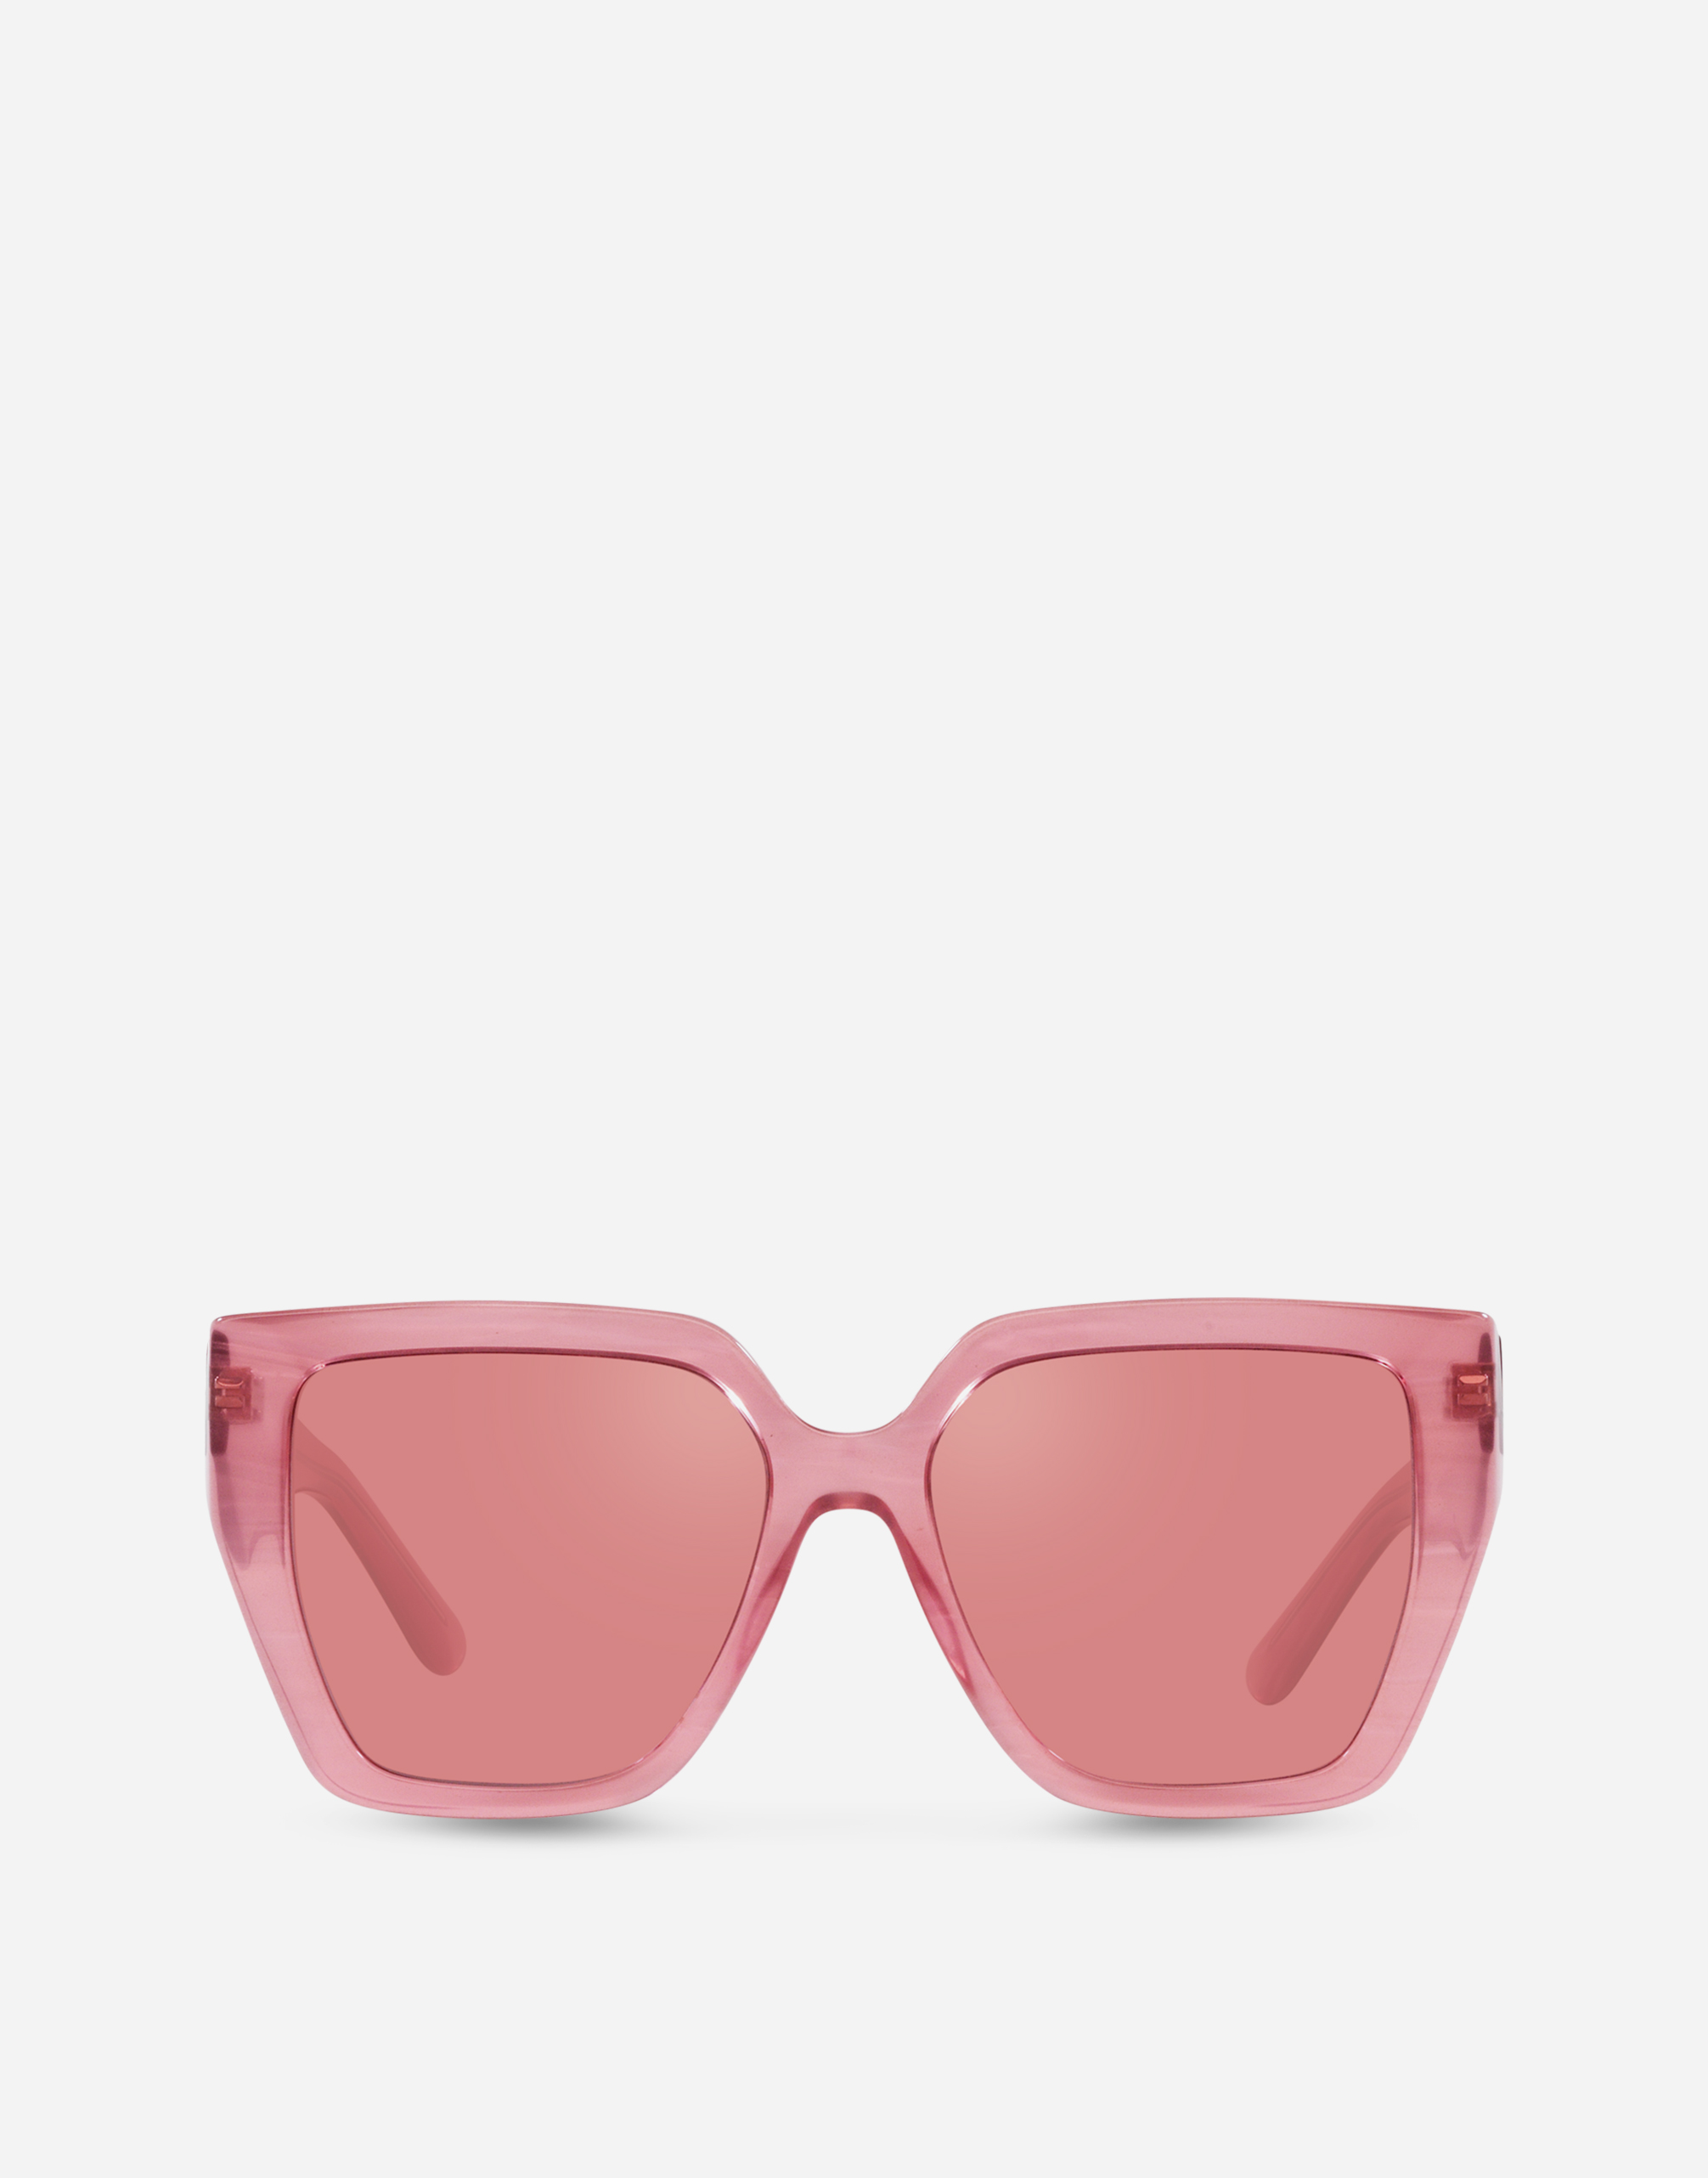 DG Crossed Sunglasses in Fleur pink